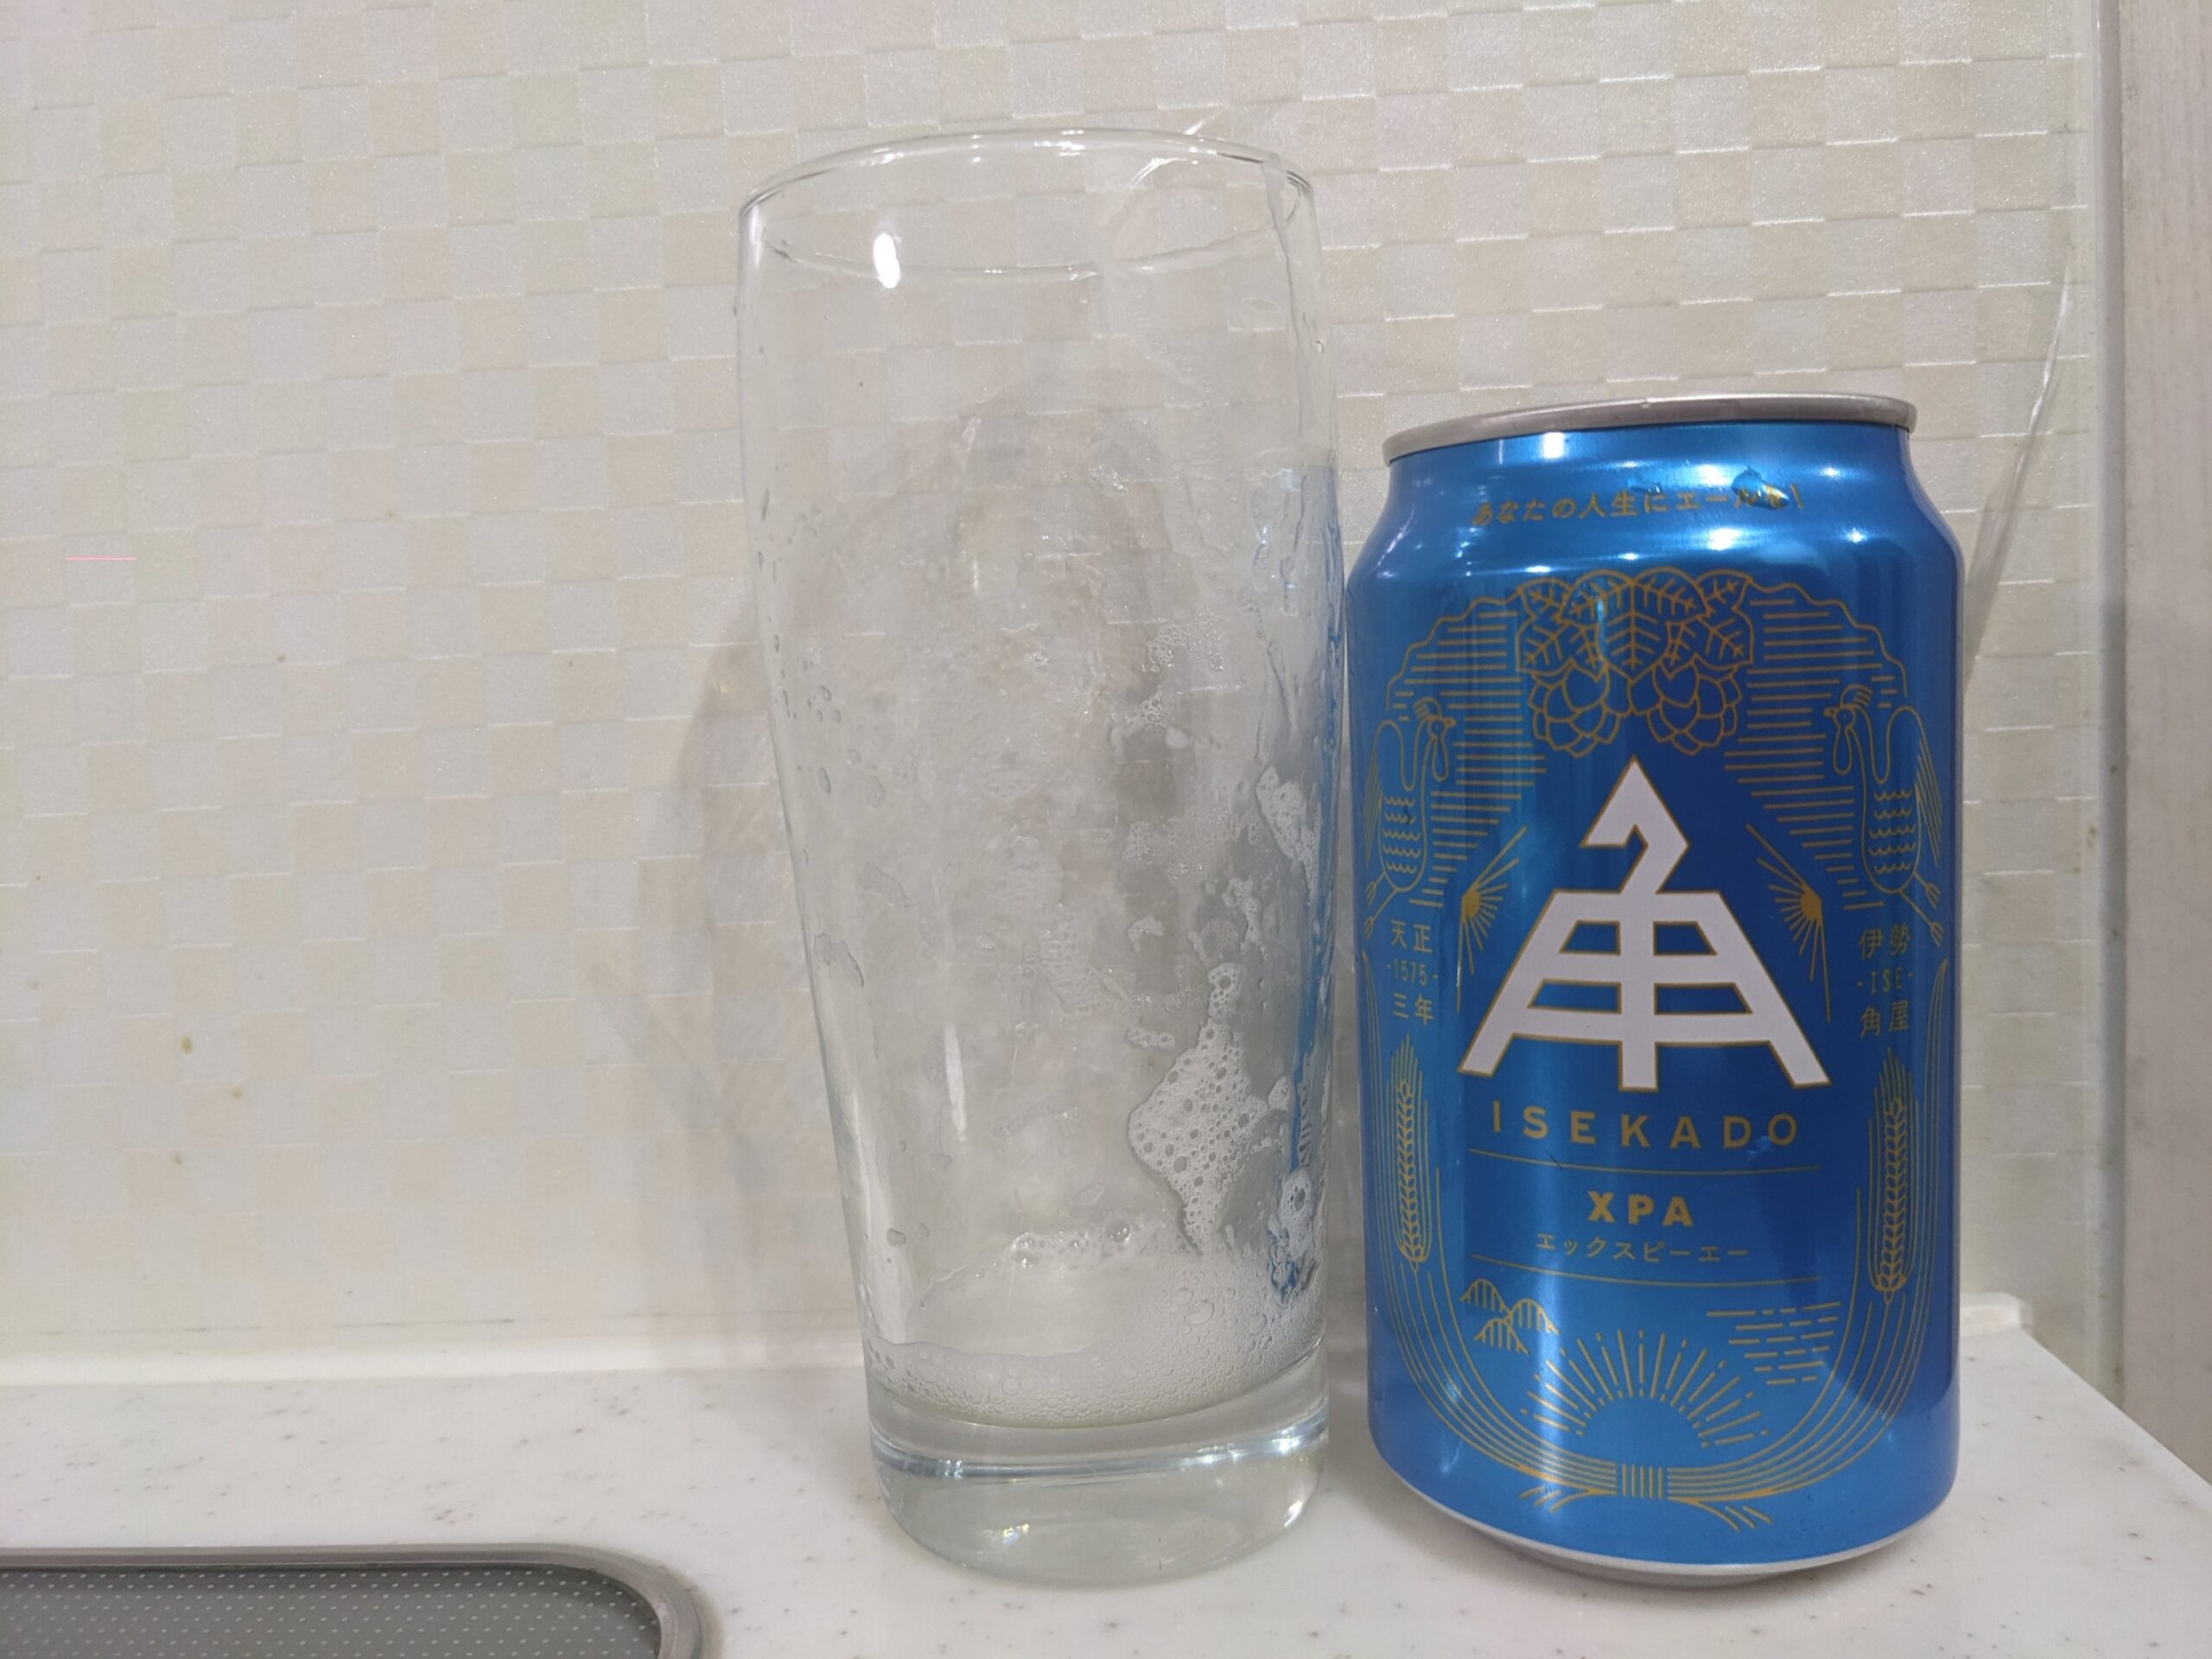 「伊勢角屋麦酒XPA（エックスピーエー）」が飲み終えたグラスとその空き缶